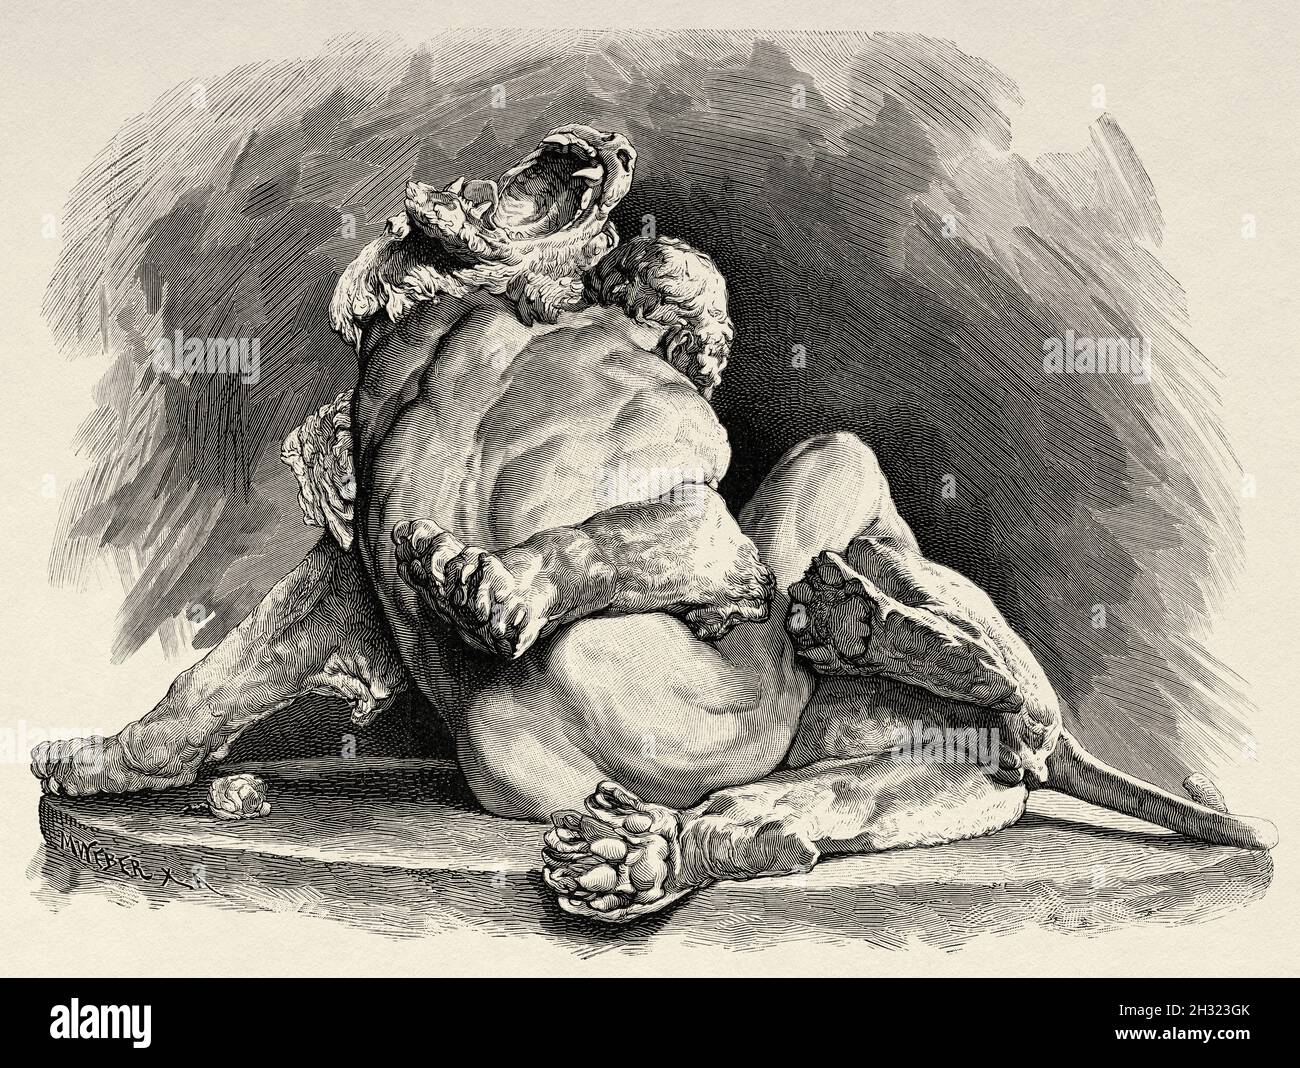 Sculpture d'un esclave allemand combattant un lion dans le cirque de Rome, bronze par M Klein. Ancienne illustration gravée du XIXe siècle de la Ilustración Artística 1882 Banque D'Images